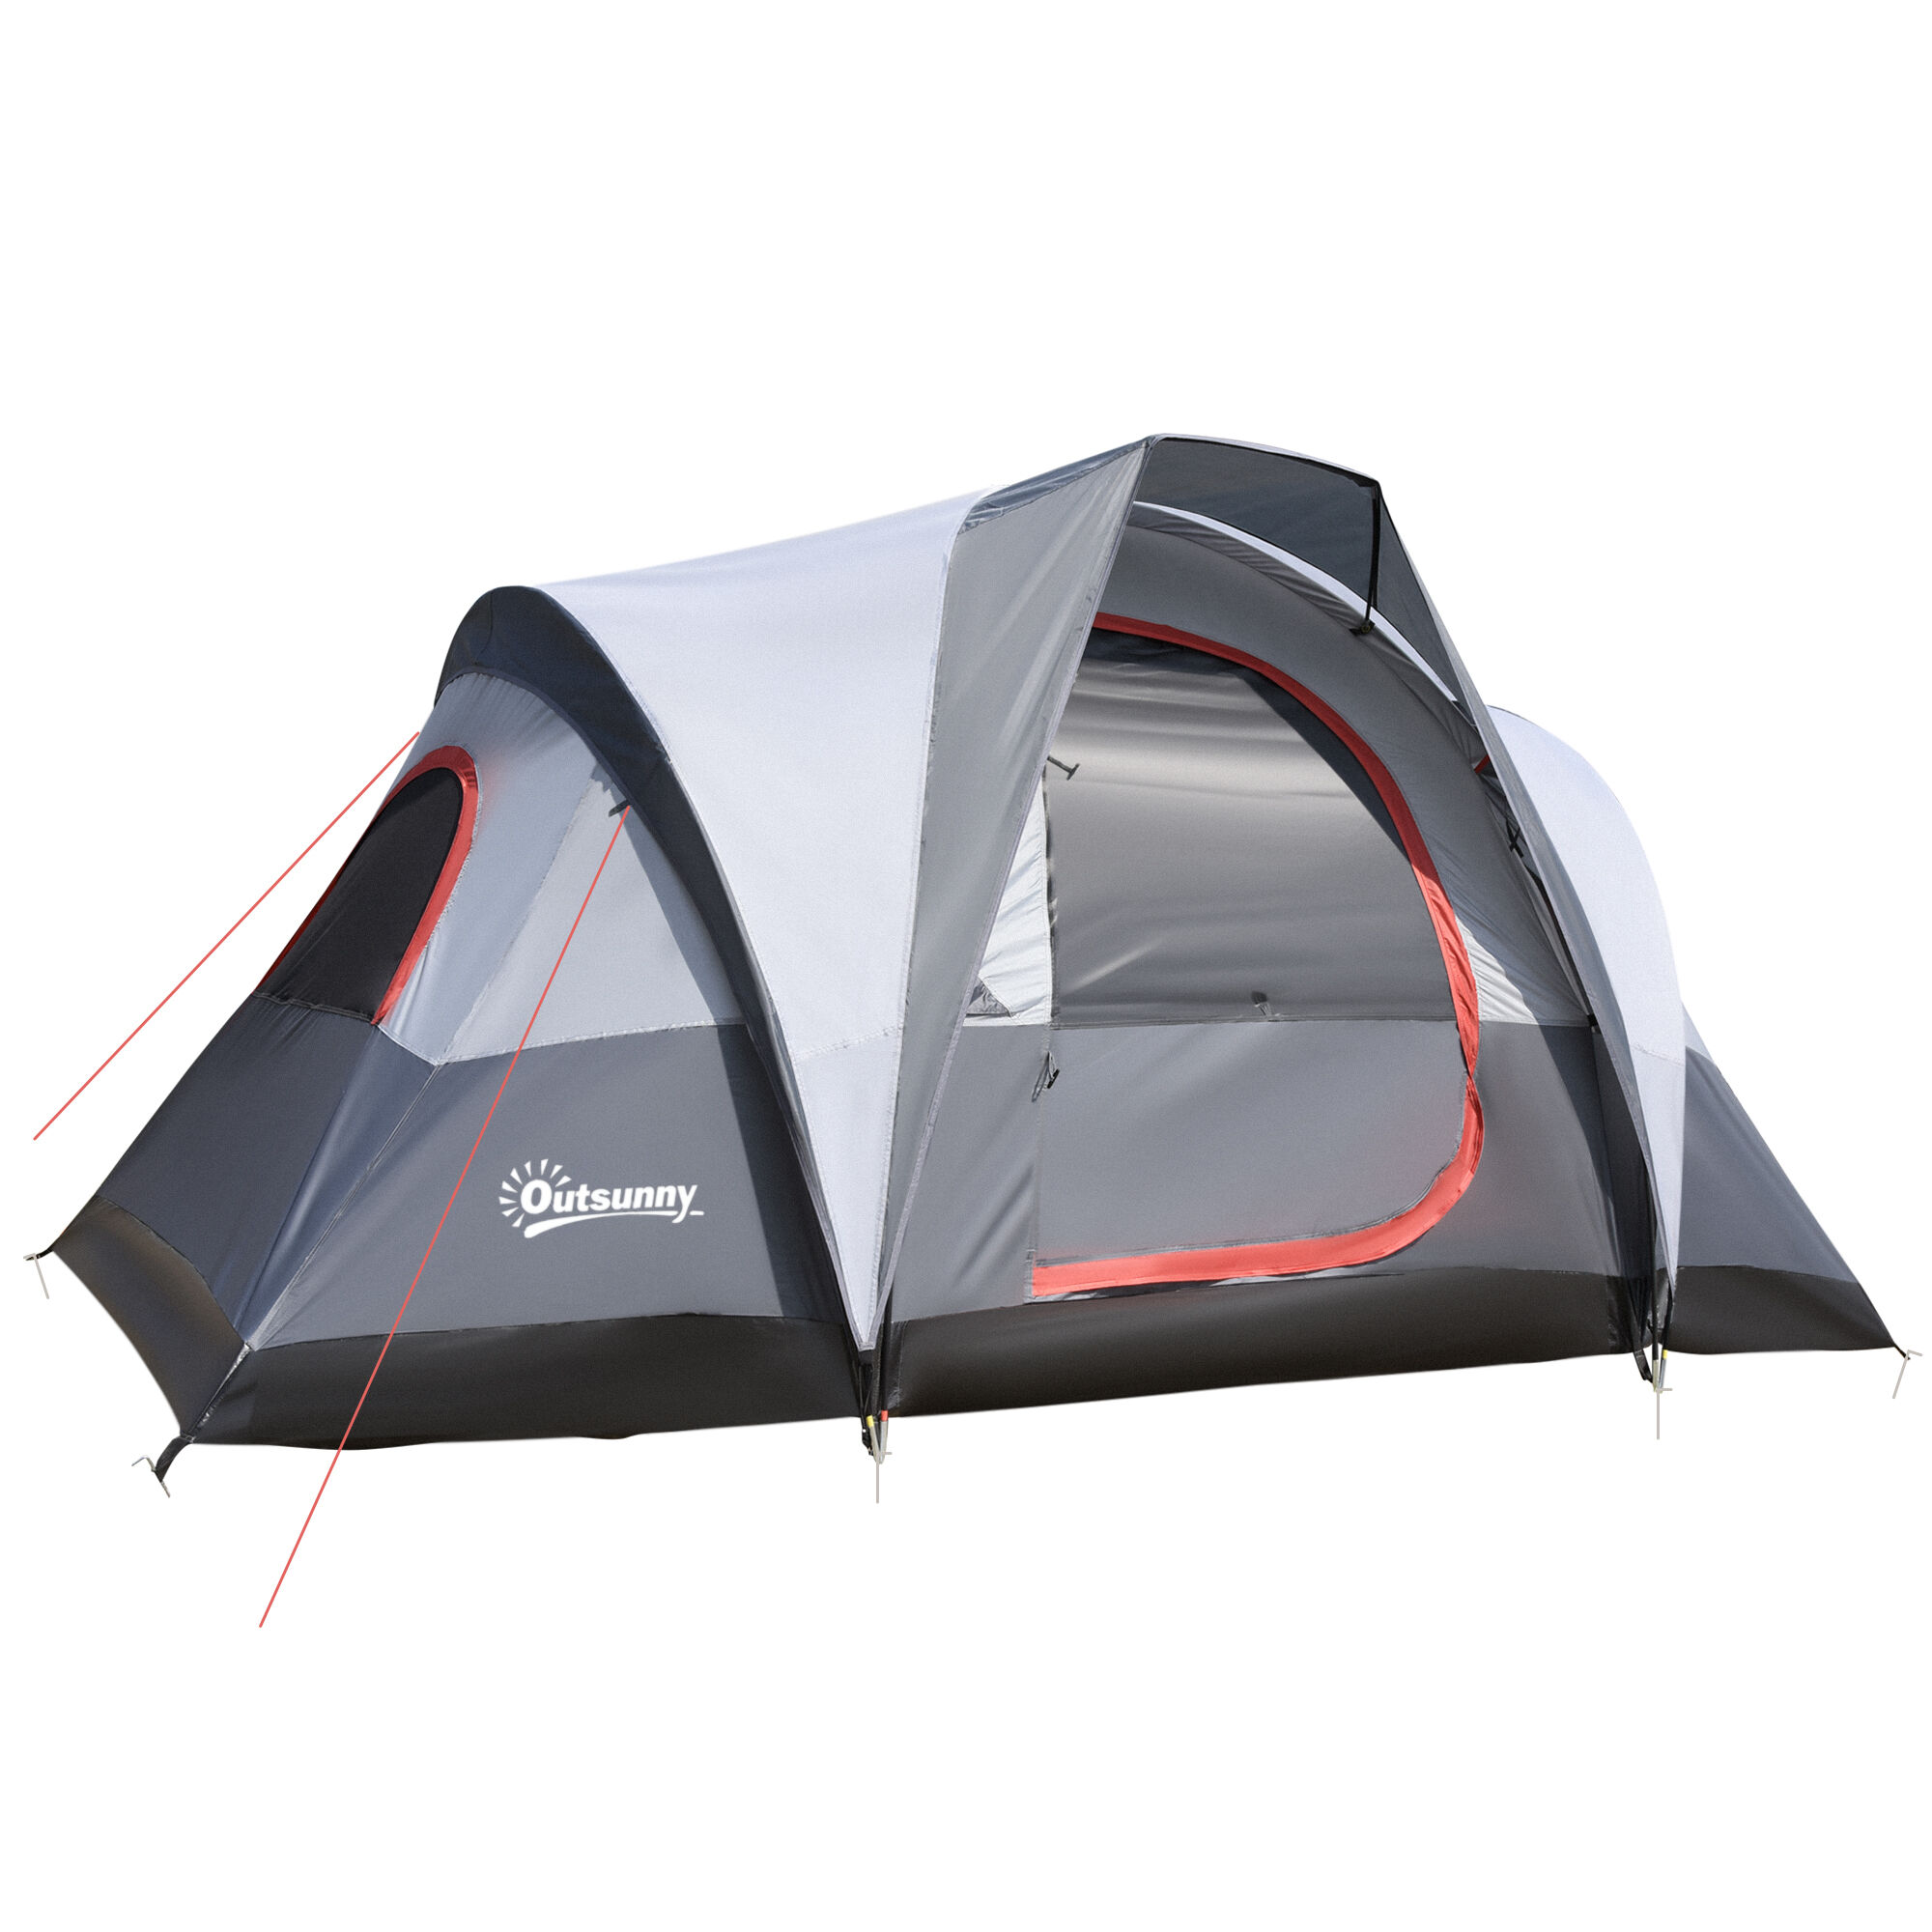 Outsunny Tente de camping 2-3 personnes 3 à 4 saisons imperméable fenêtres à mailles double couche 355 x 190 x 170 cm gris   Aosom France